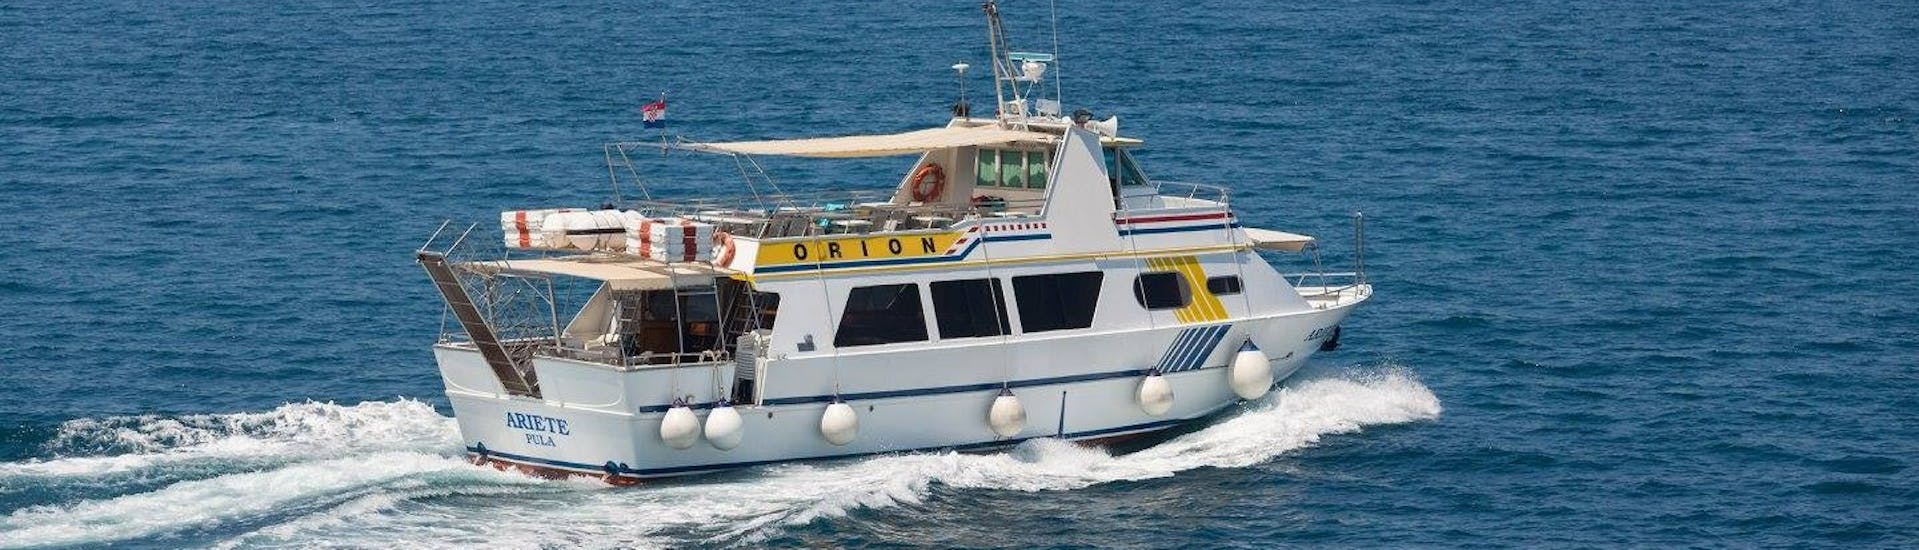 Le bateau de Orion Travel Pula sur la mer pendant la Balade en bateau de Pula à Rovinj et à l'île Rouge avec Déjeuner.